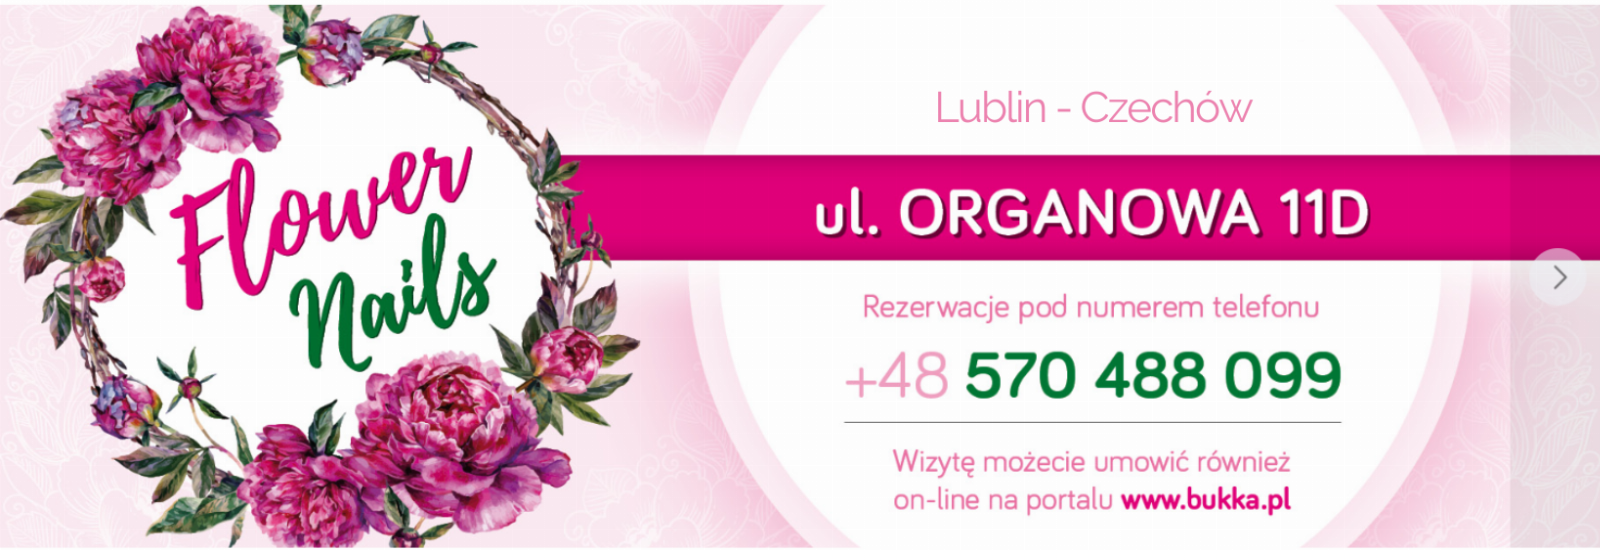 FLOWER NAILS ul. Organowa, Lublin, 348616452-608501357874756-1422356594029353220-n-1